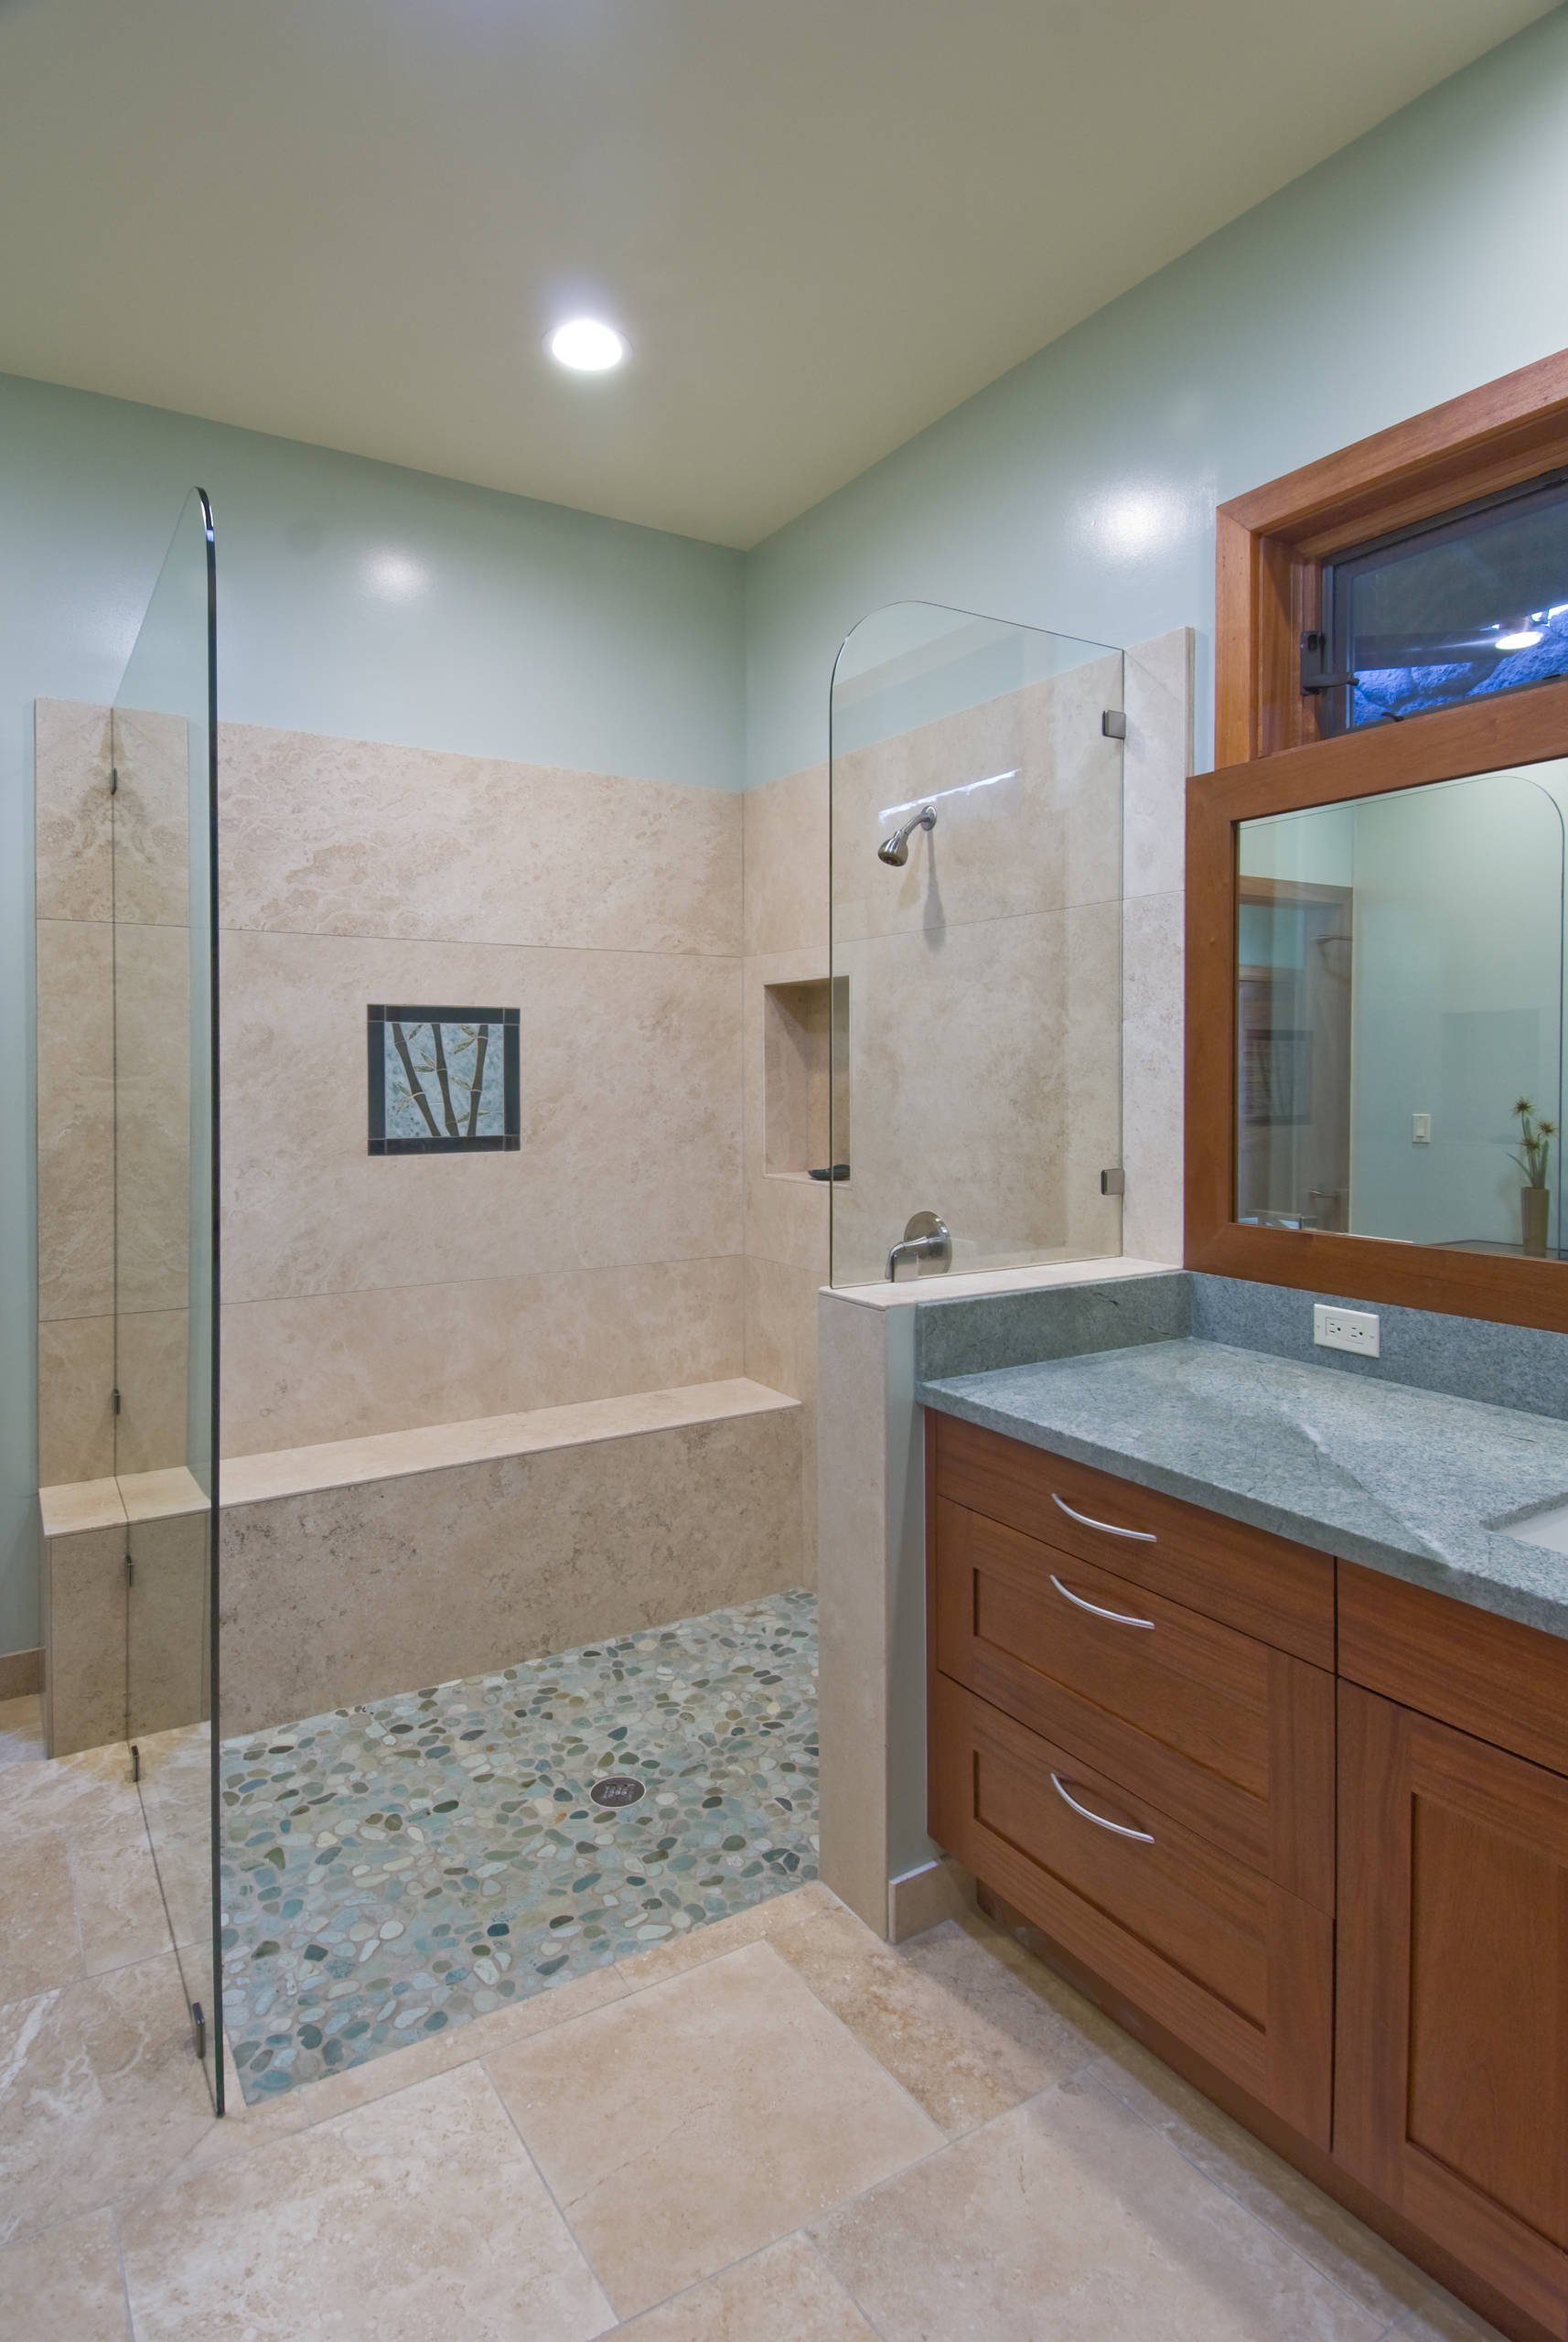 Thunder Blue quartz  Blue granite, Bathroom interior design, Home decor